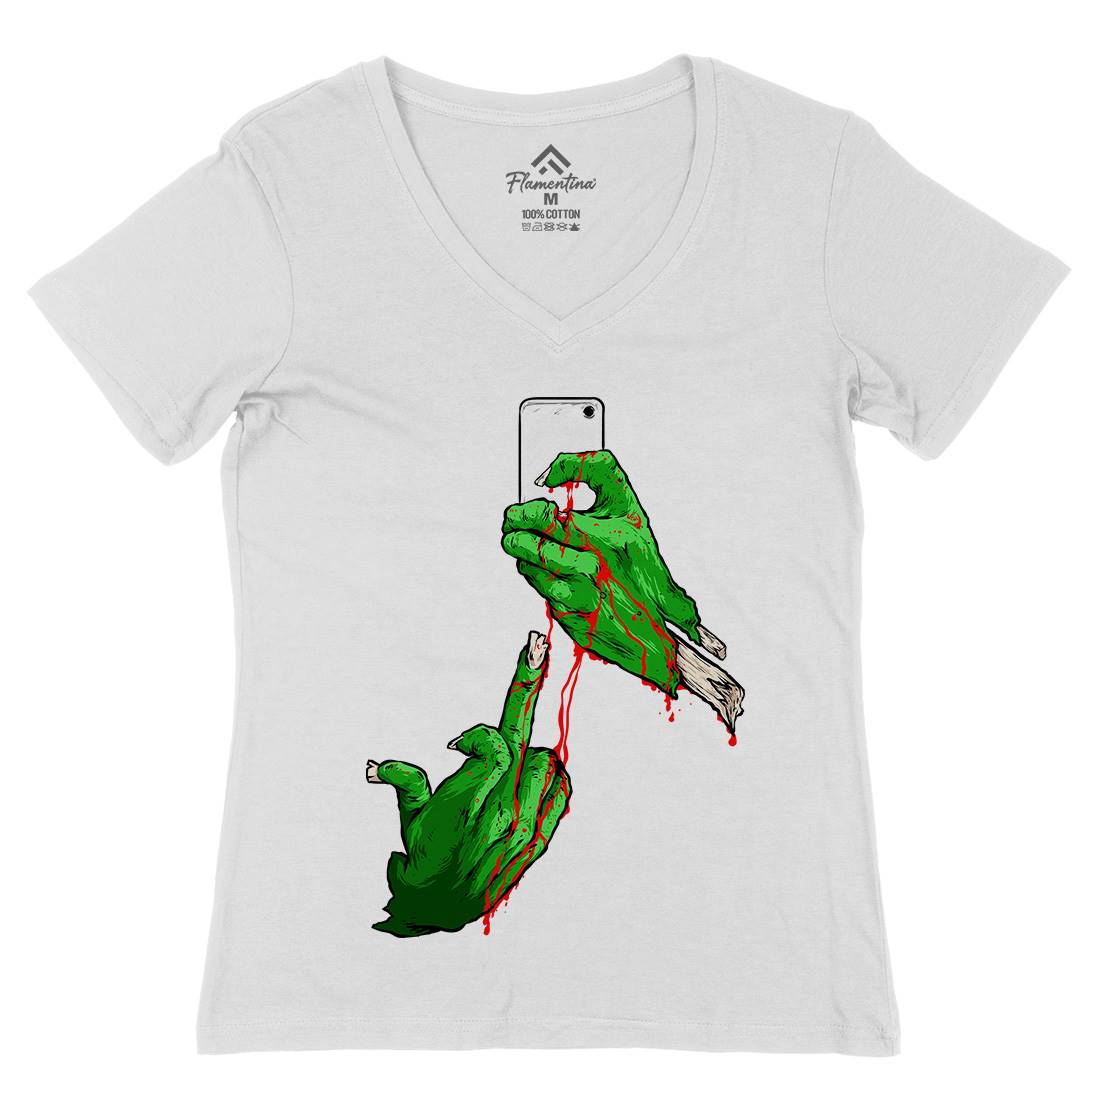 Selfie Womens Organic V-Neck T-Shirt Geek C974